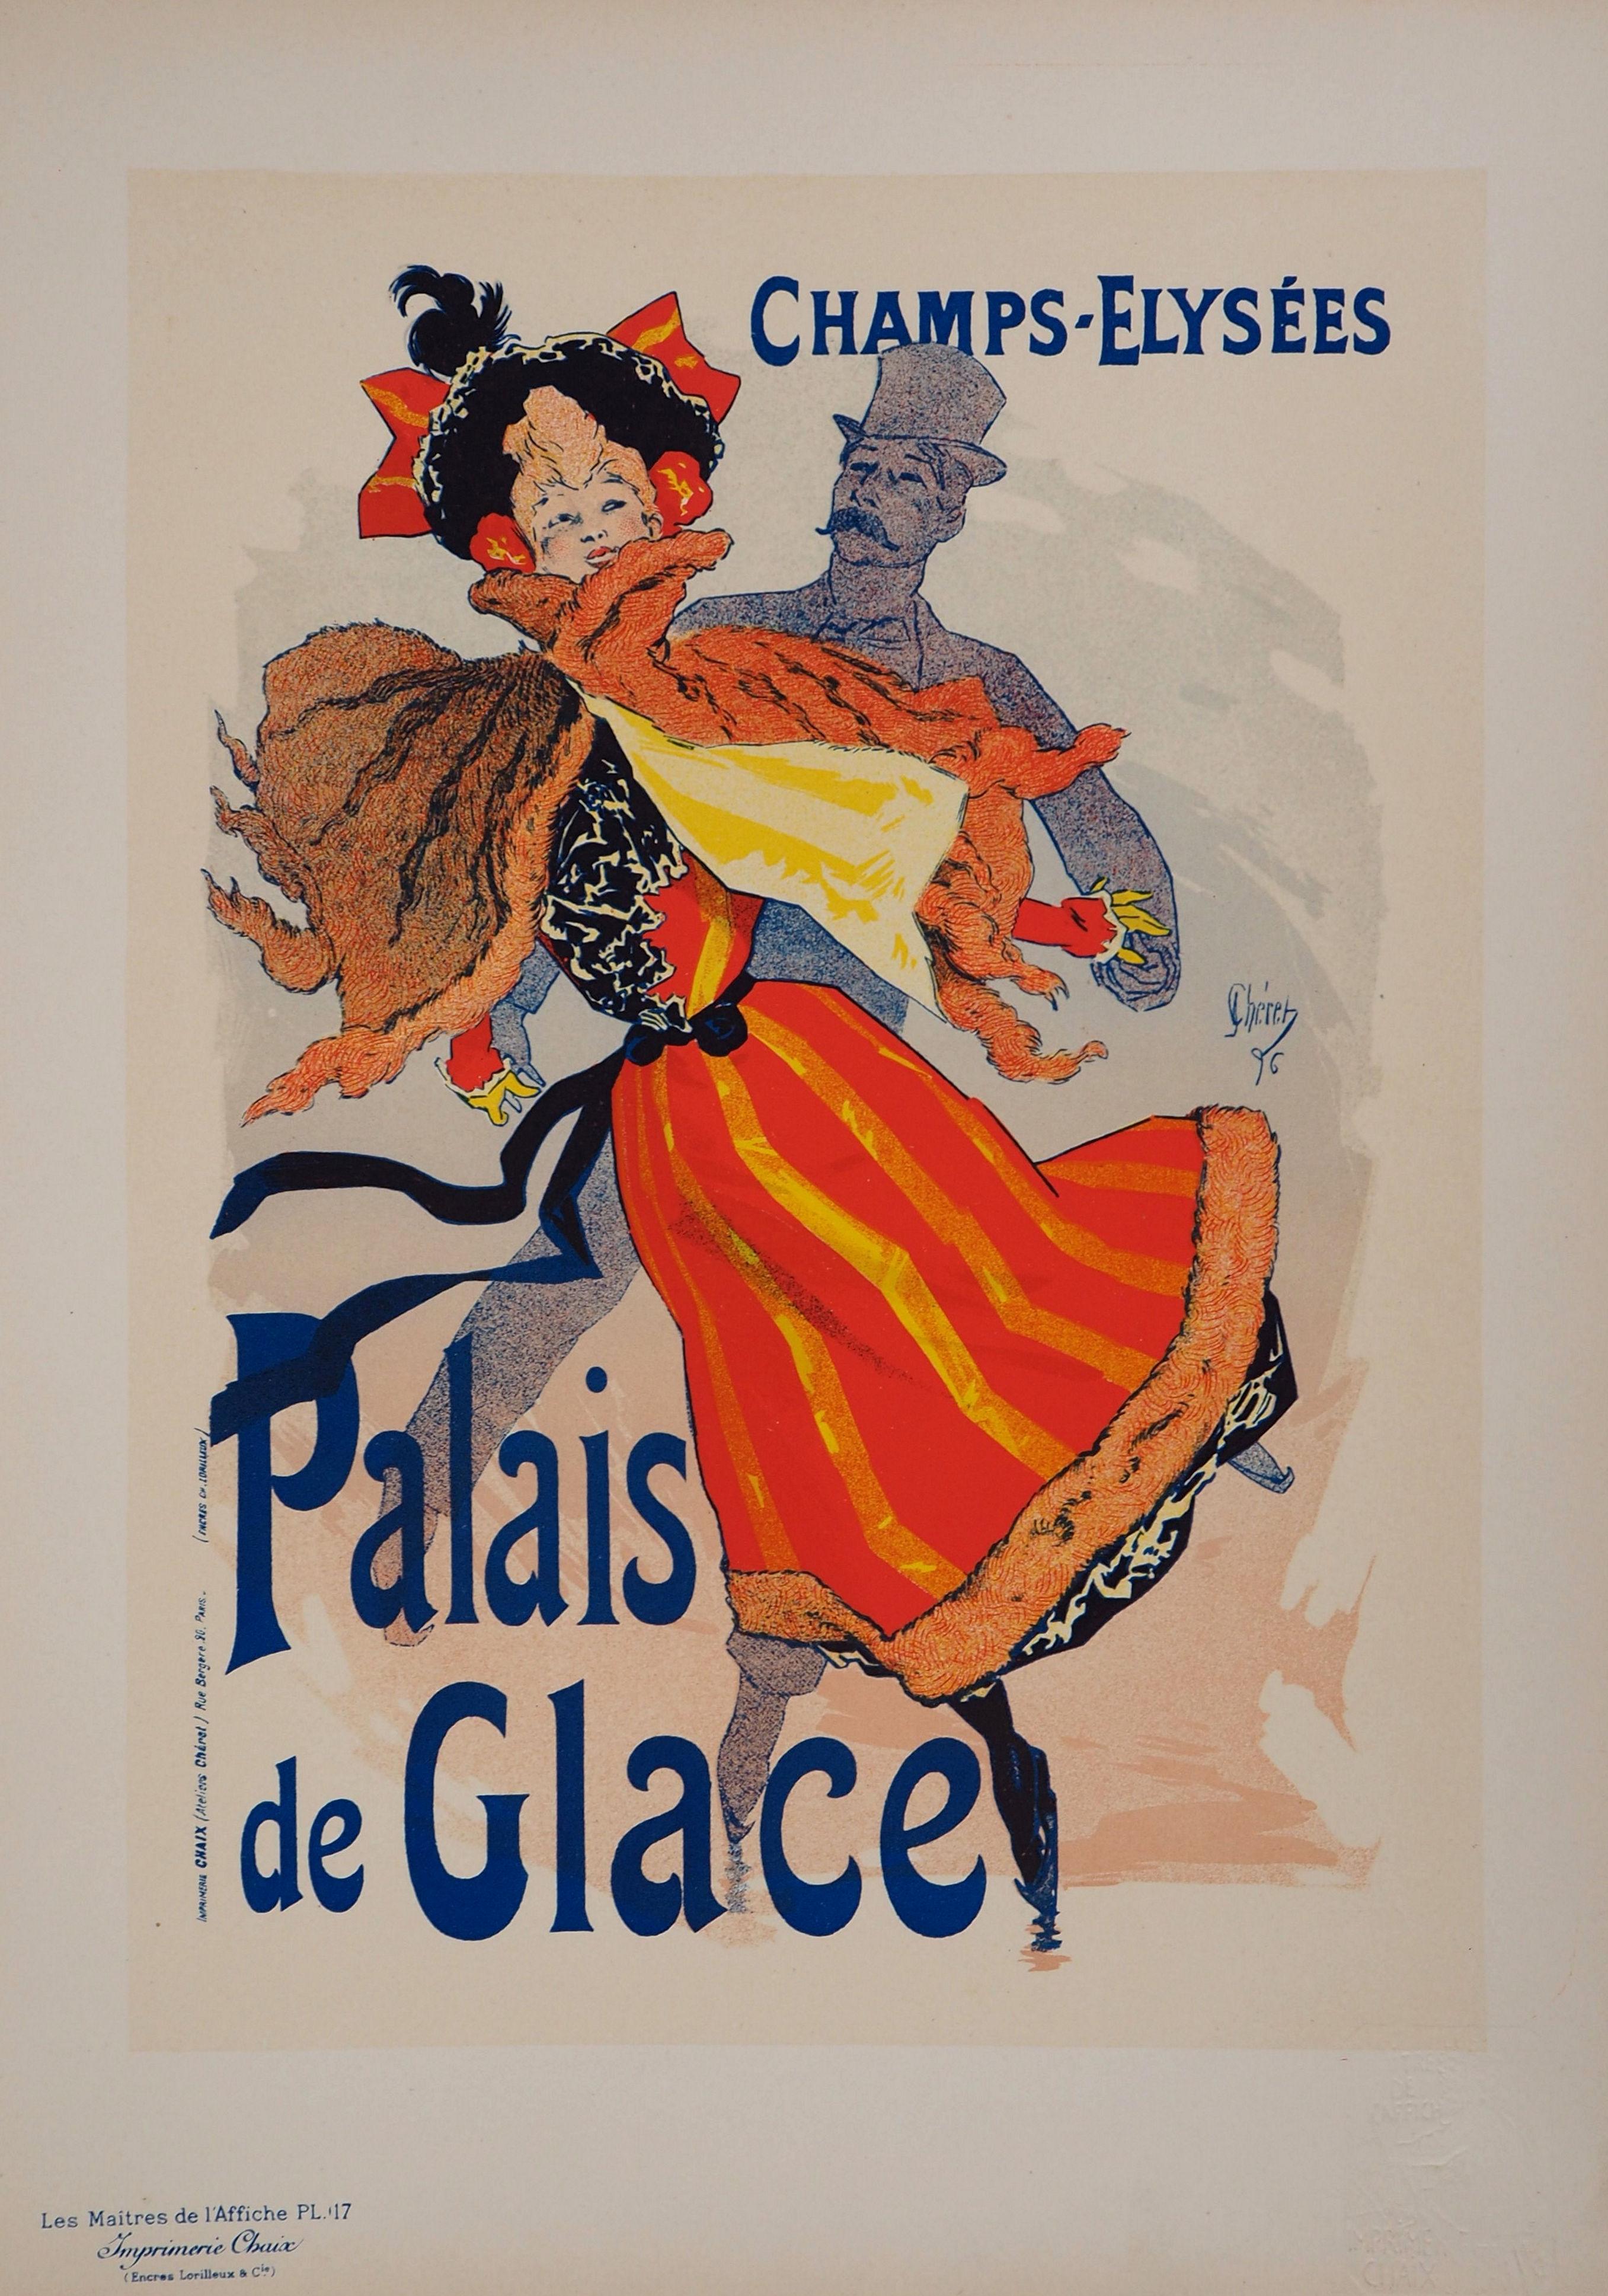 Palais de Glace (Ice Palace) - Lithograph (Les Maîtres de l'Affiche), 1895 - Print by Jules Chéret